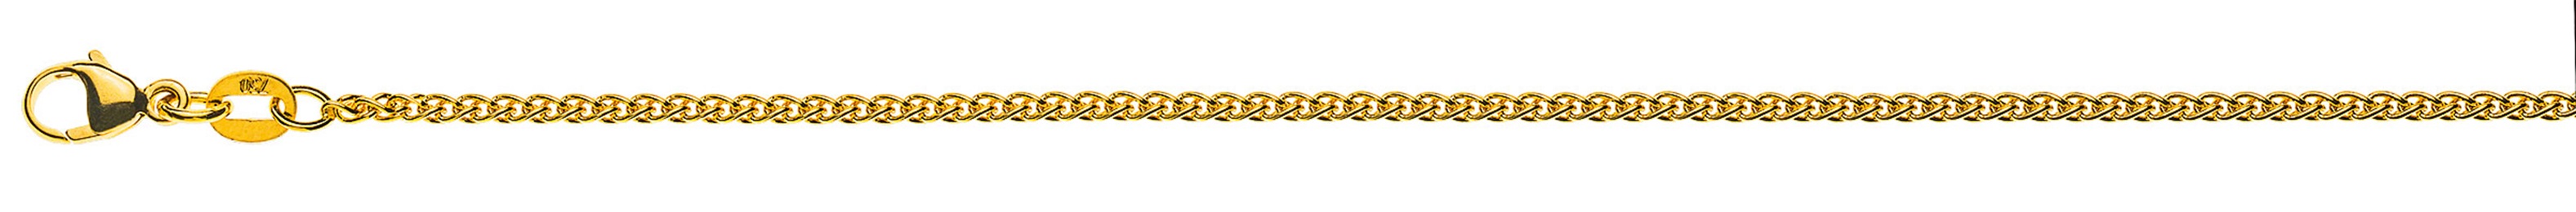 AURONOS Prestige Halskette Gelbgold 18K Zopfkette 38cm 1.6mm